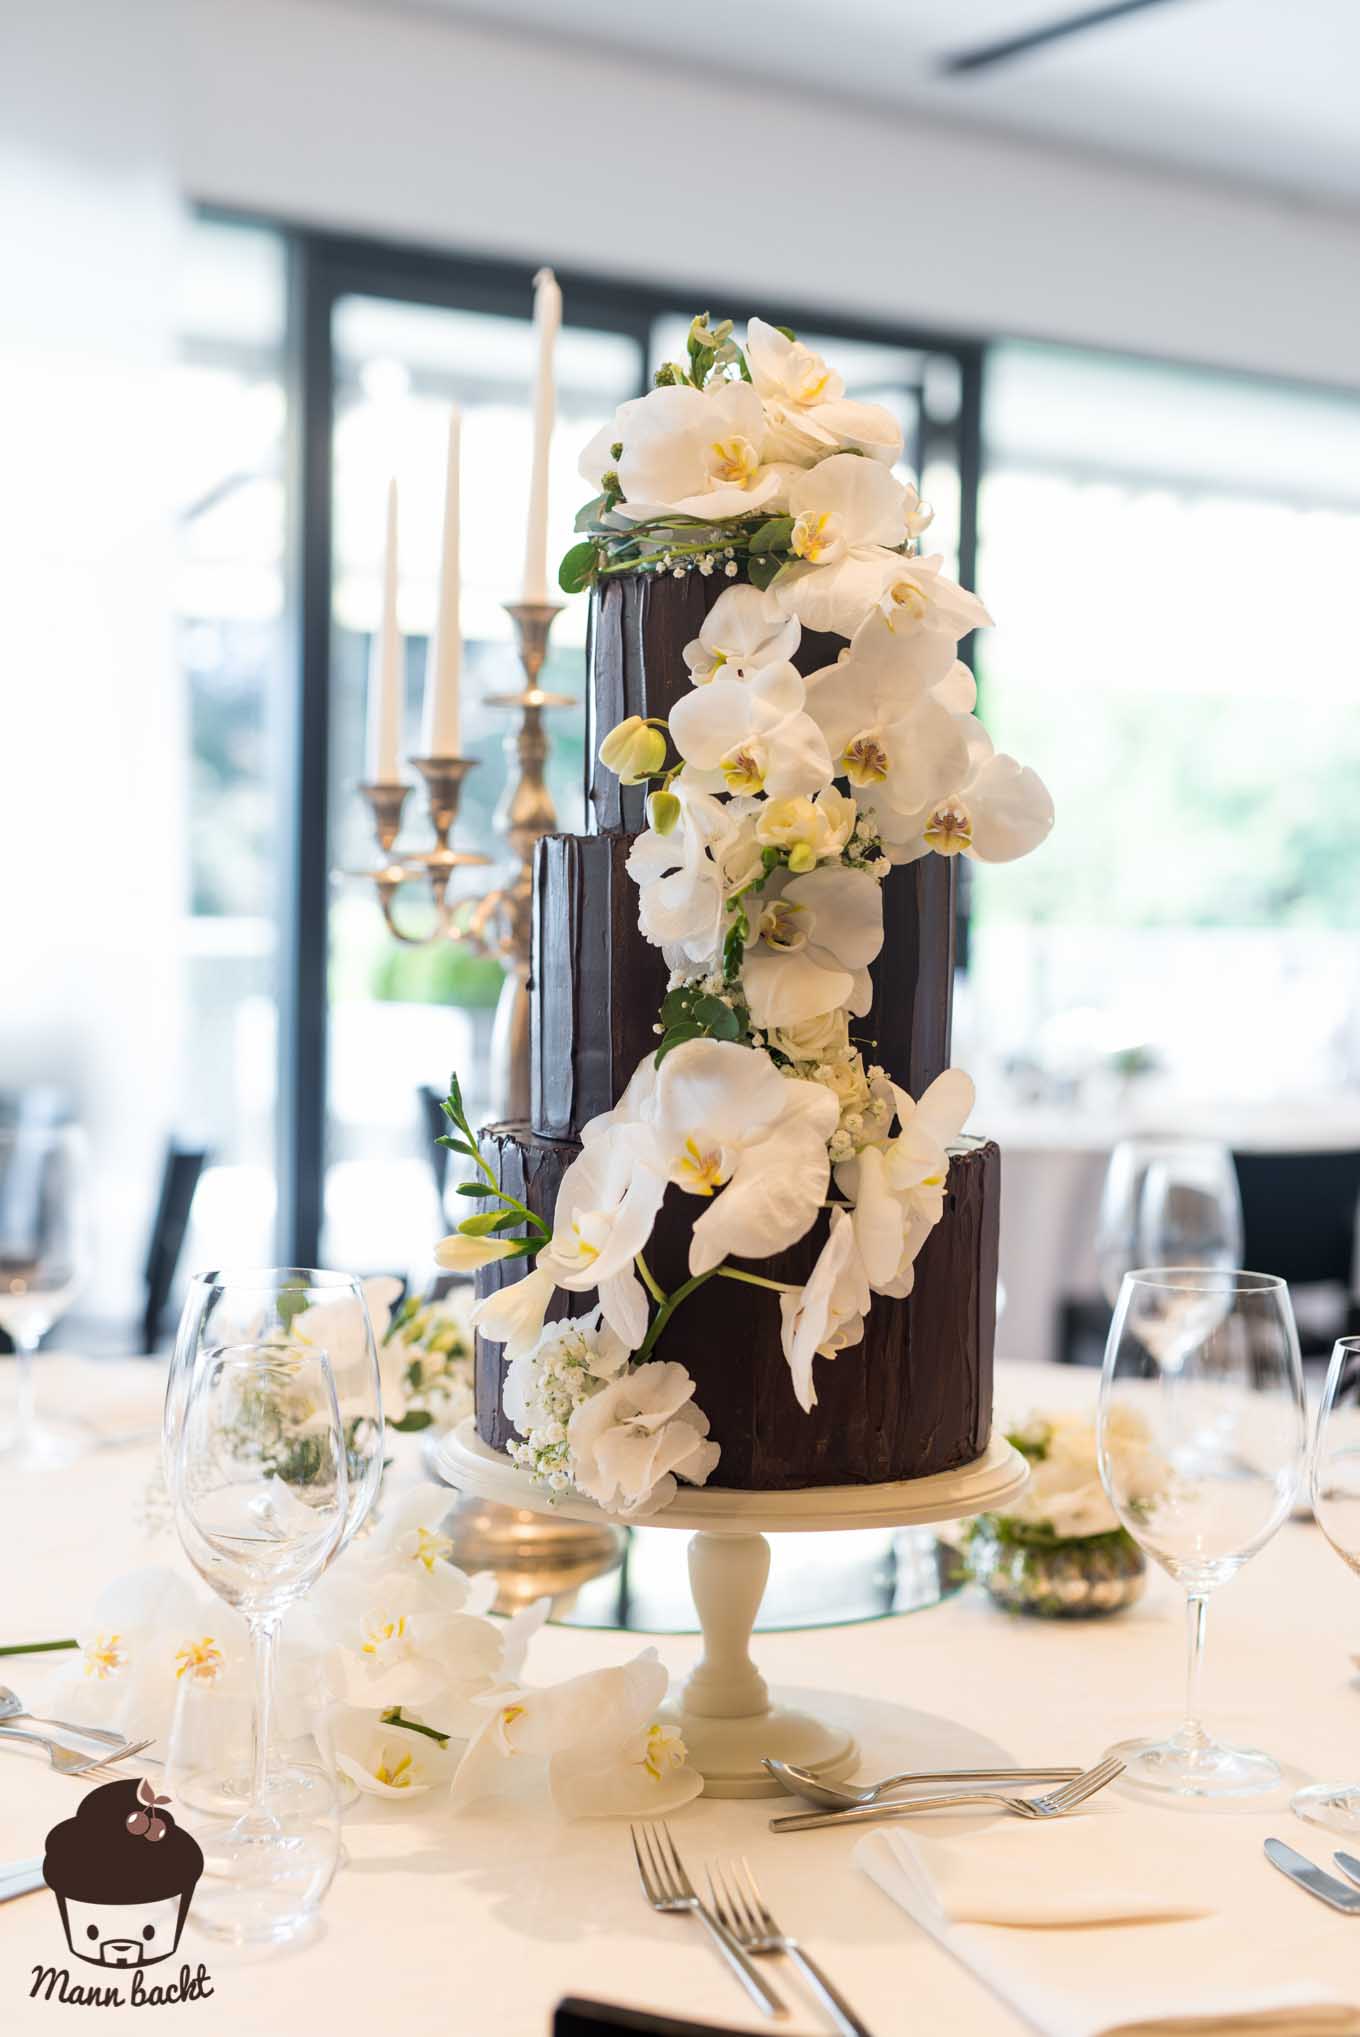 Mann backt Hochzeitstorte mit Orchideen Wedding Cake Orchids (2 von 7)